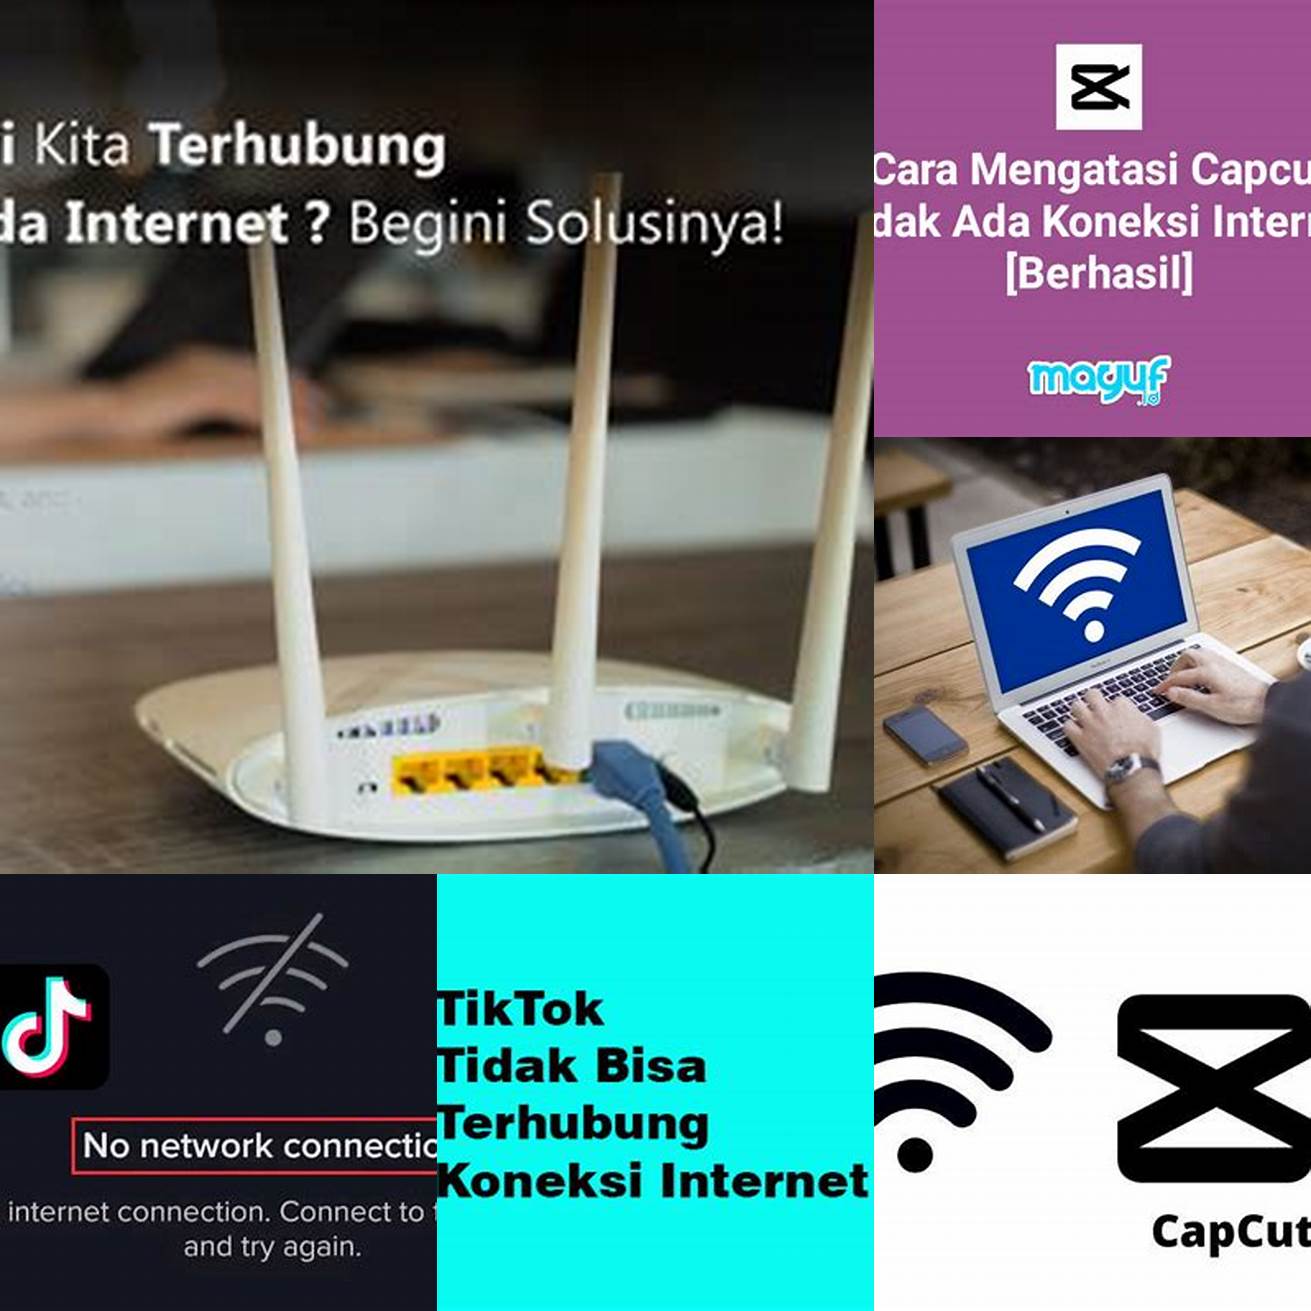 3 Tidak memerlukan koneksi internet